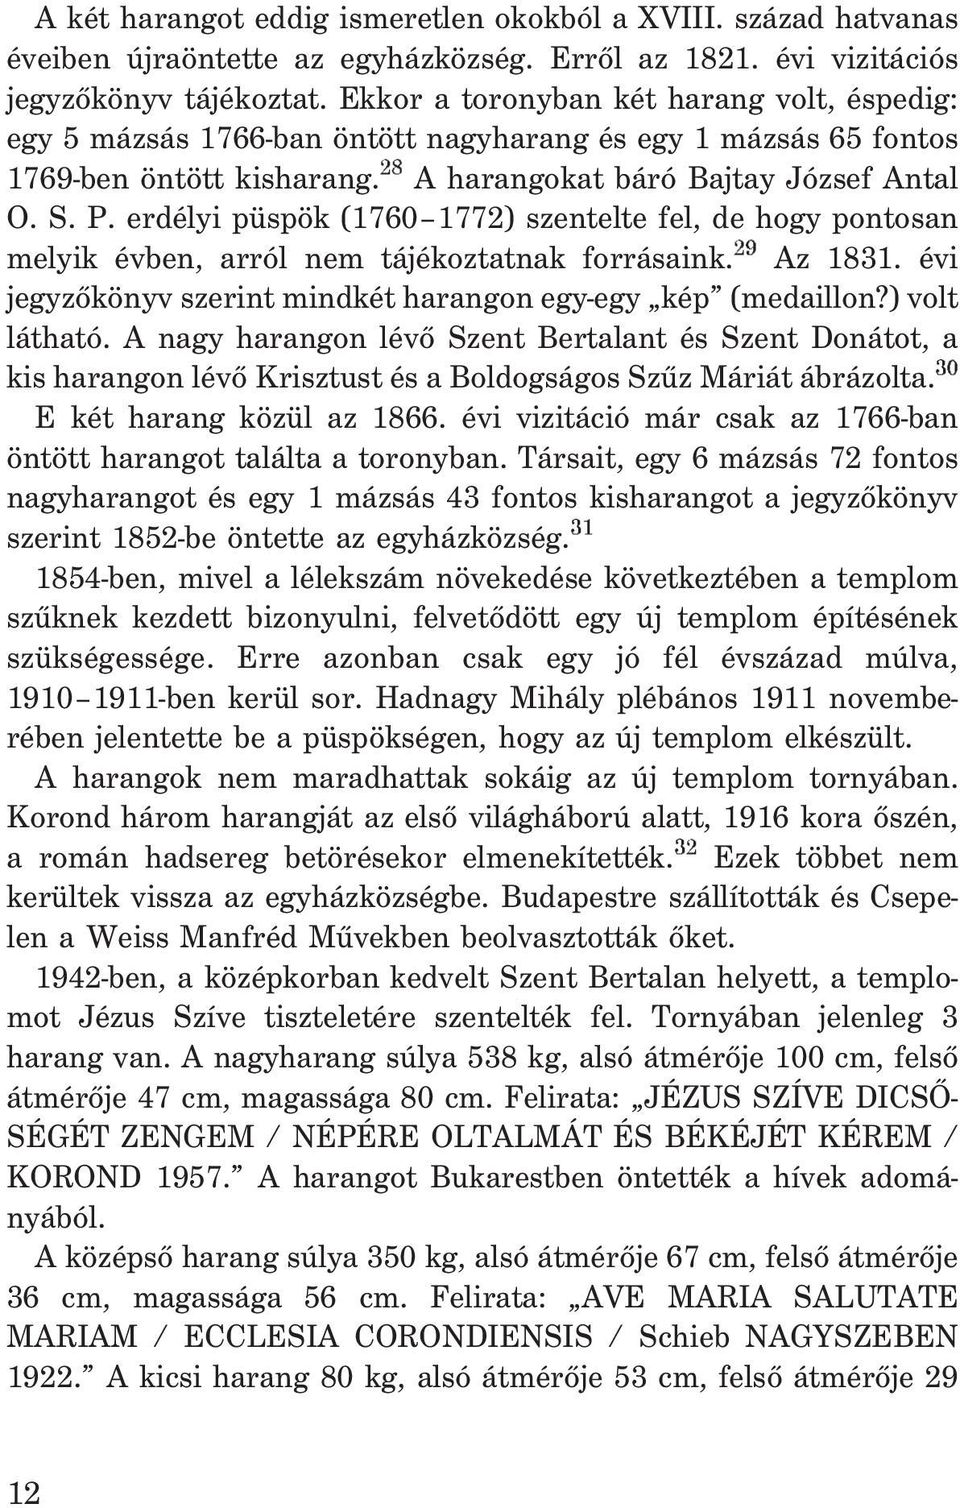 erdélyi püspök (1760 1772) szentelte fel, de hogy pontosan melyik évben, arról nem tájékoztatnak forrásaink. 29 Az 1831. évi jegyzõkönyv szerint mindkét harangon egy-egy kép (medaillon?) volt látható.